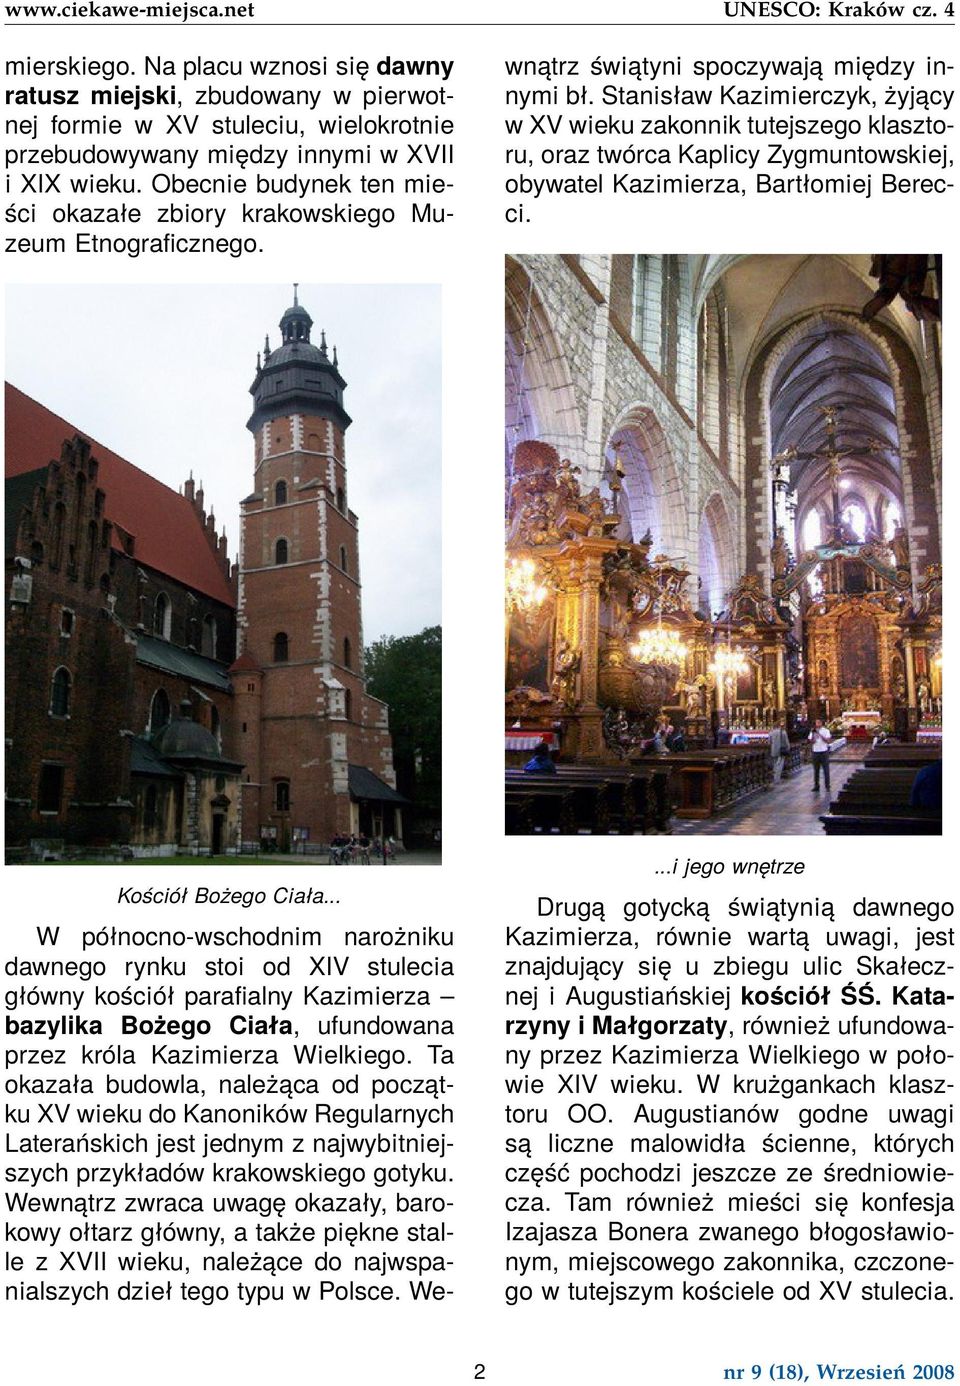 W północno-wschodnim narożniku dawnego rynku stoi od XIV stulecia główny kościół parafialny Kazimierza bazylika Bożego Ciała, ufundowana przez króla Kazimierza Wielkiego.